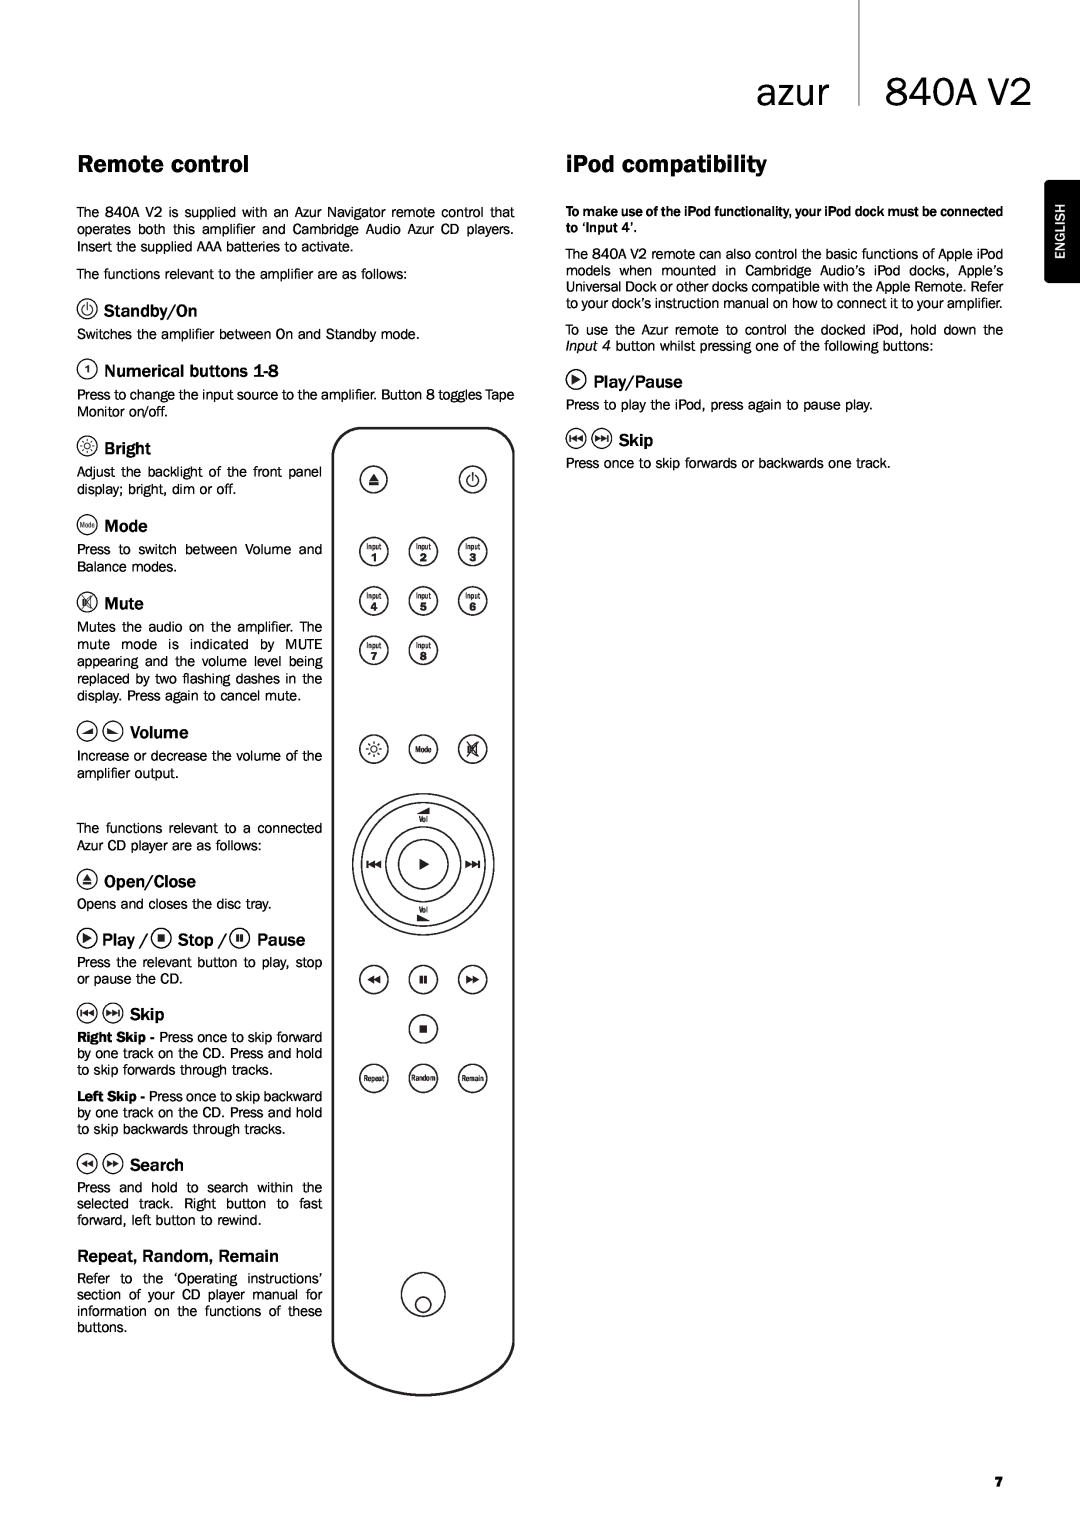 Cambridge Audio 840A V2 user manual Remote control, iPod compatibility, azur 